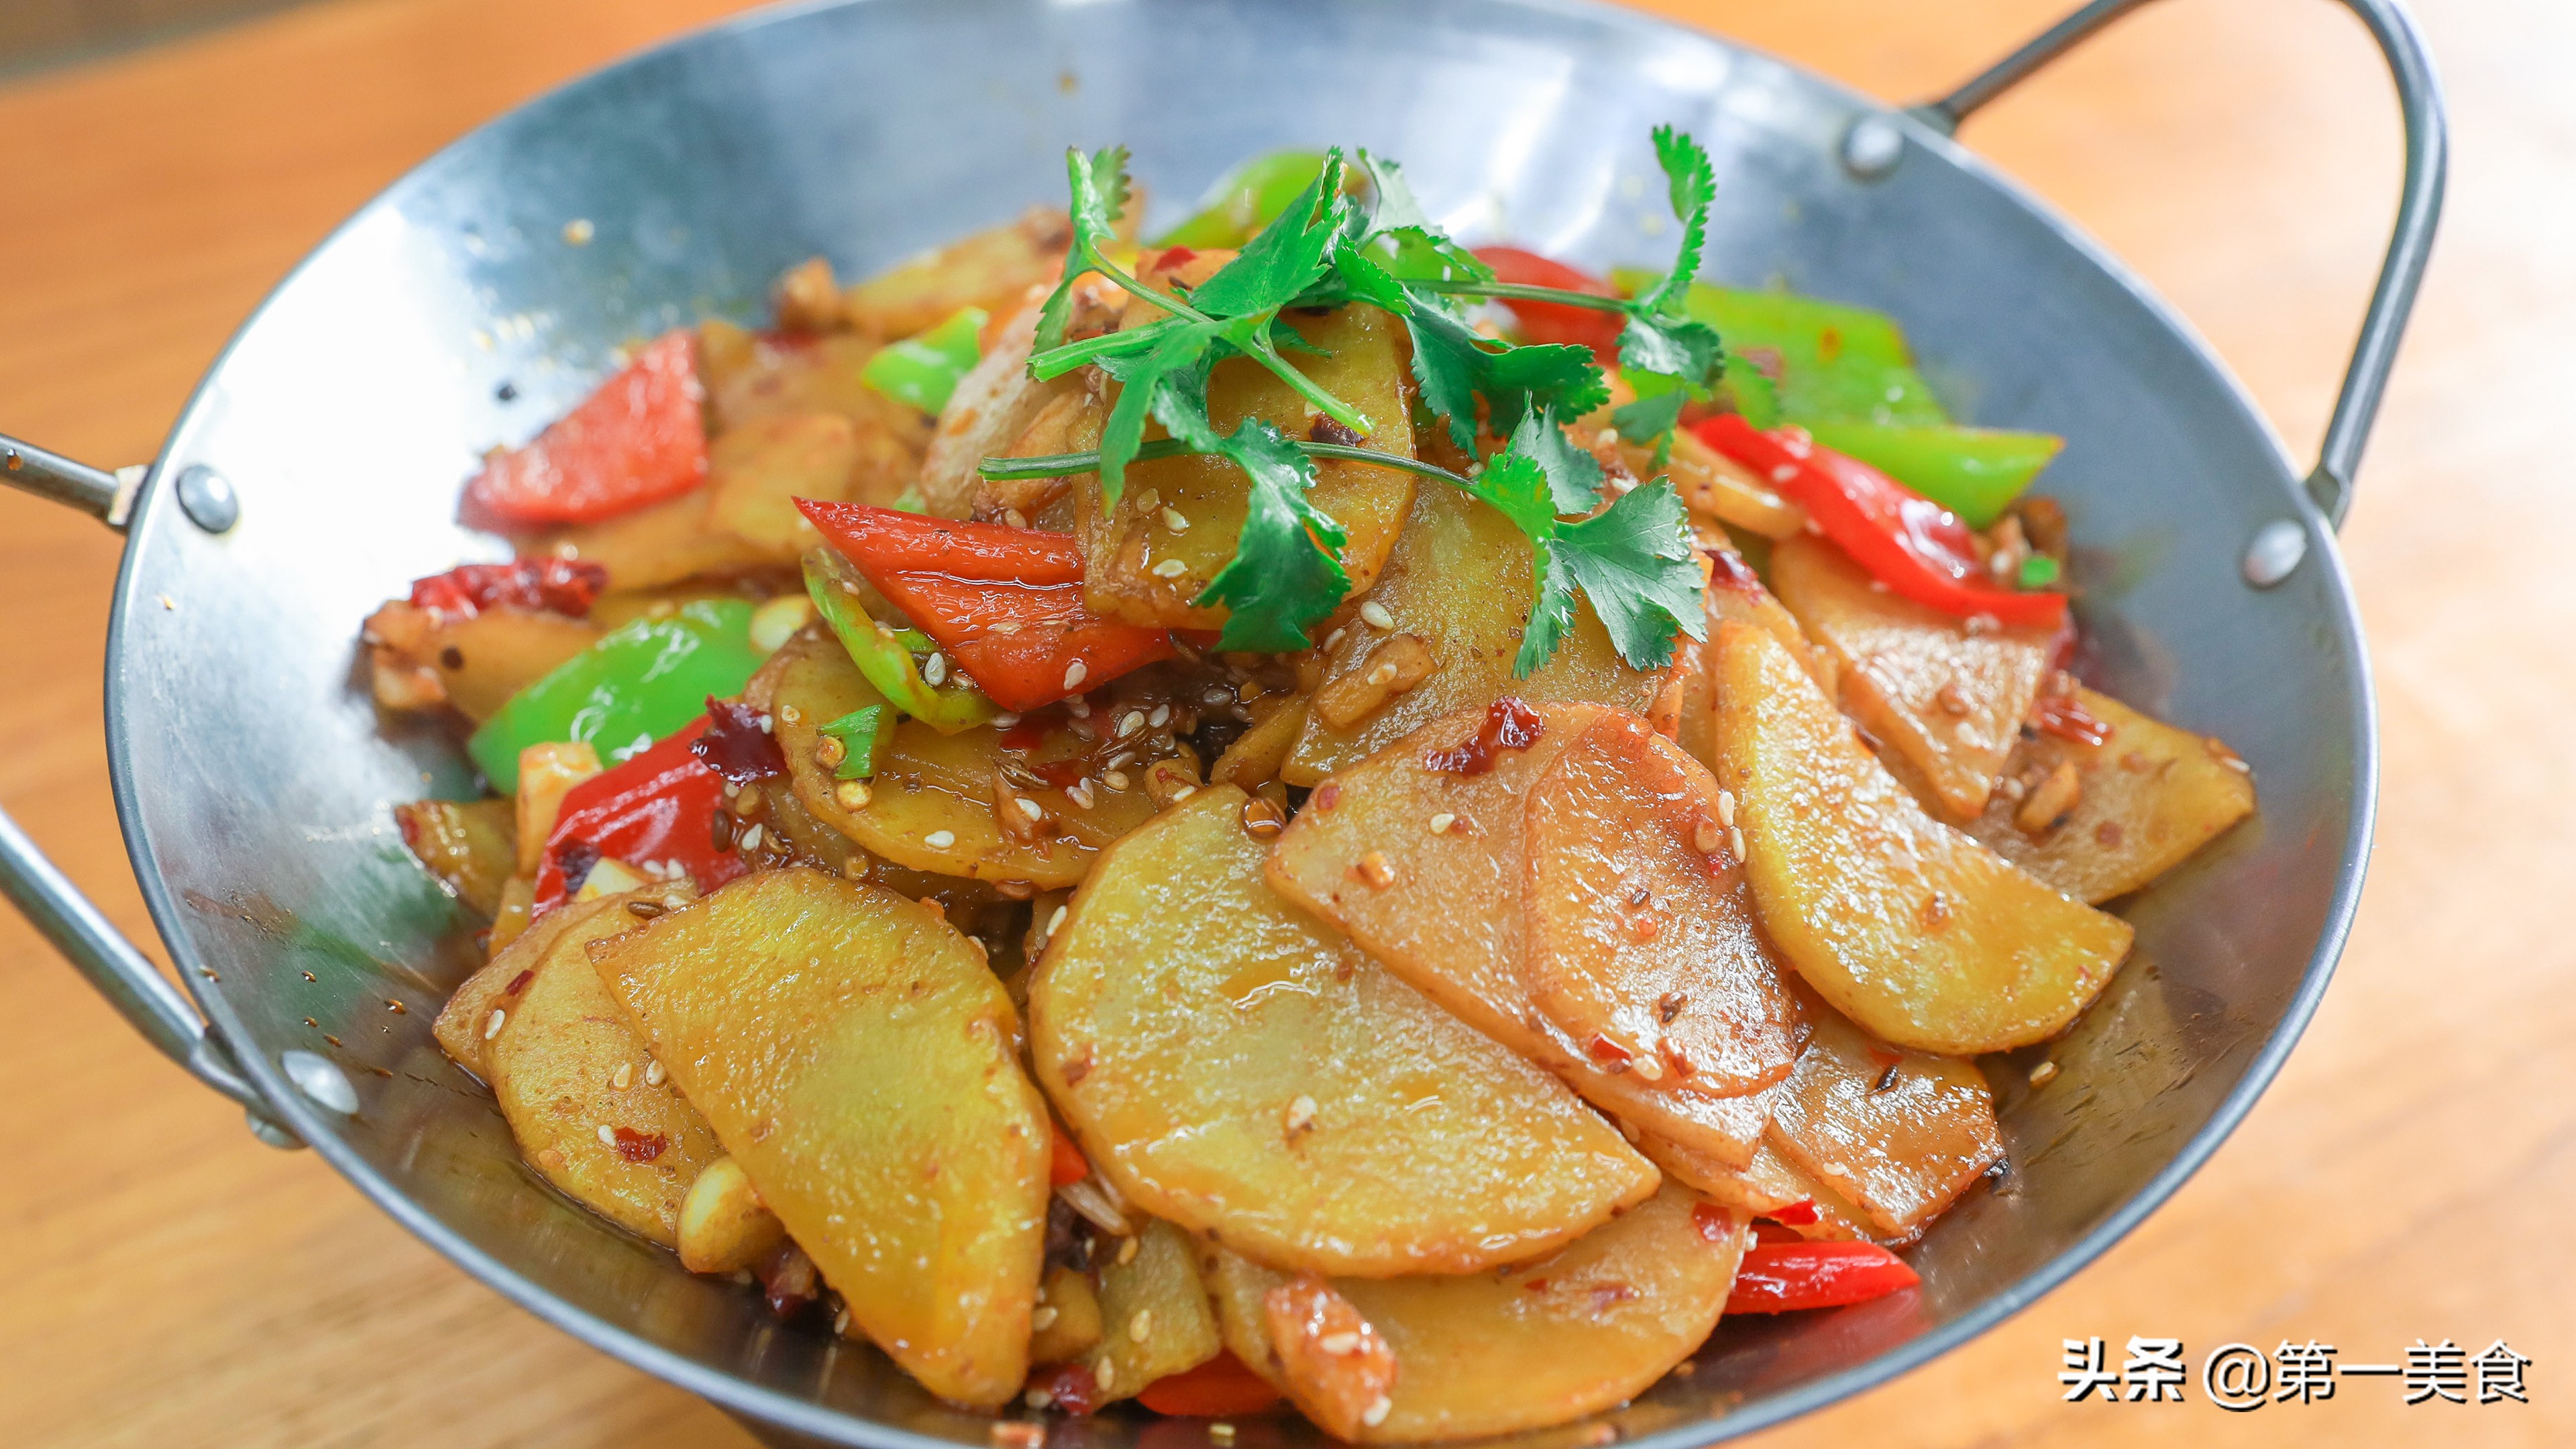 分享一道美味的干锅土豆片的做法